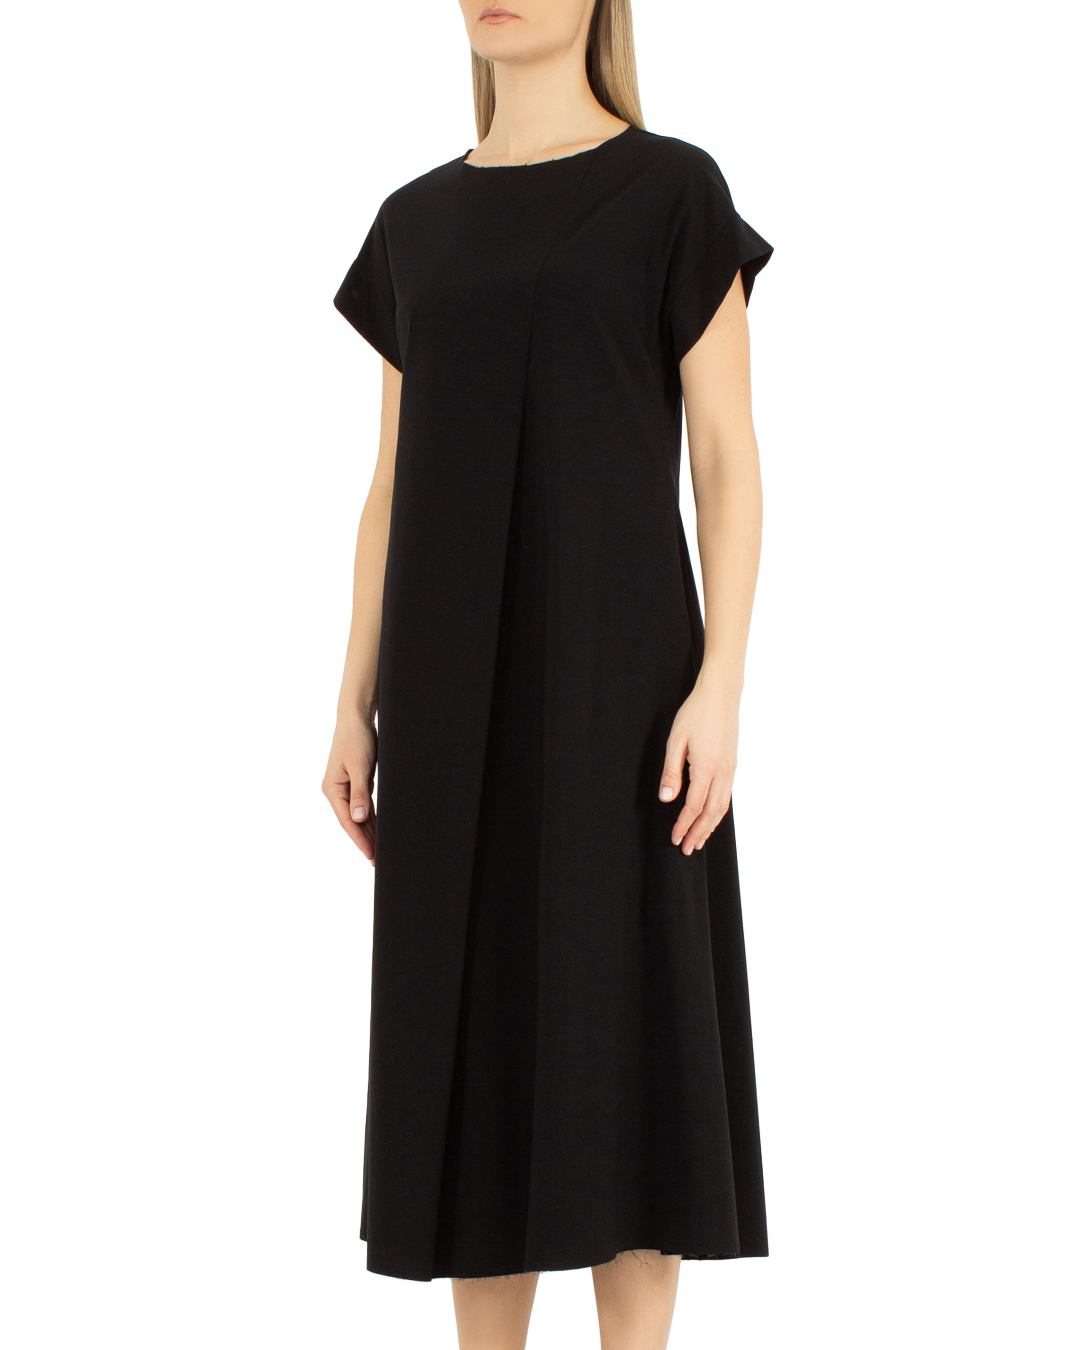 платье J.M design JM-AB1706 черный 2xs, размер 2xs - фото 3